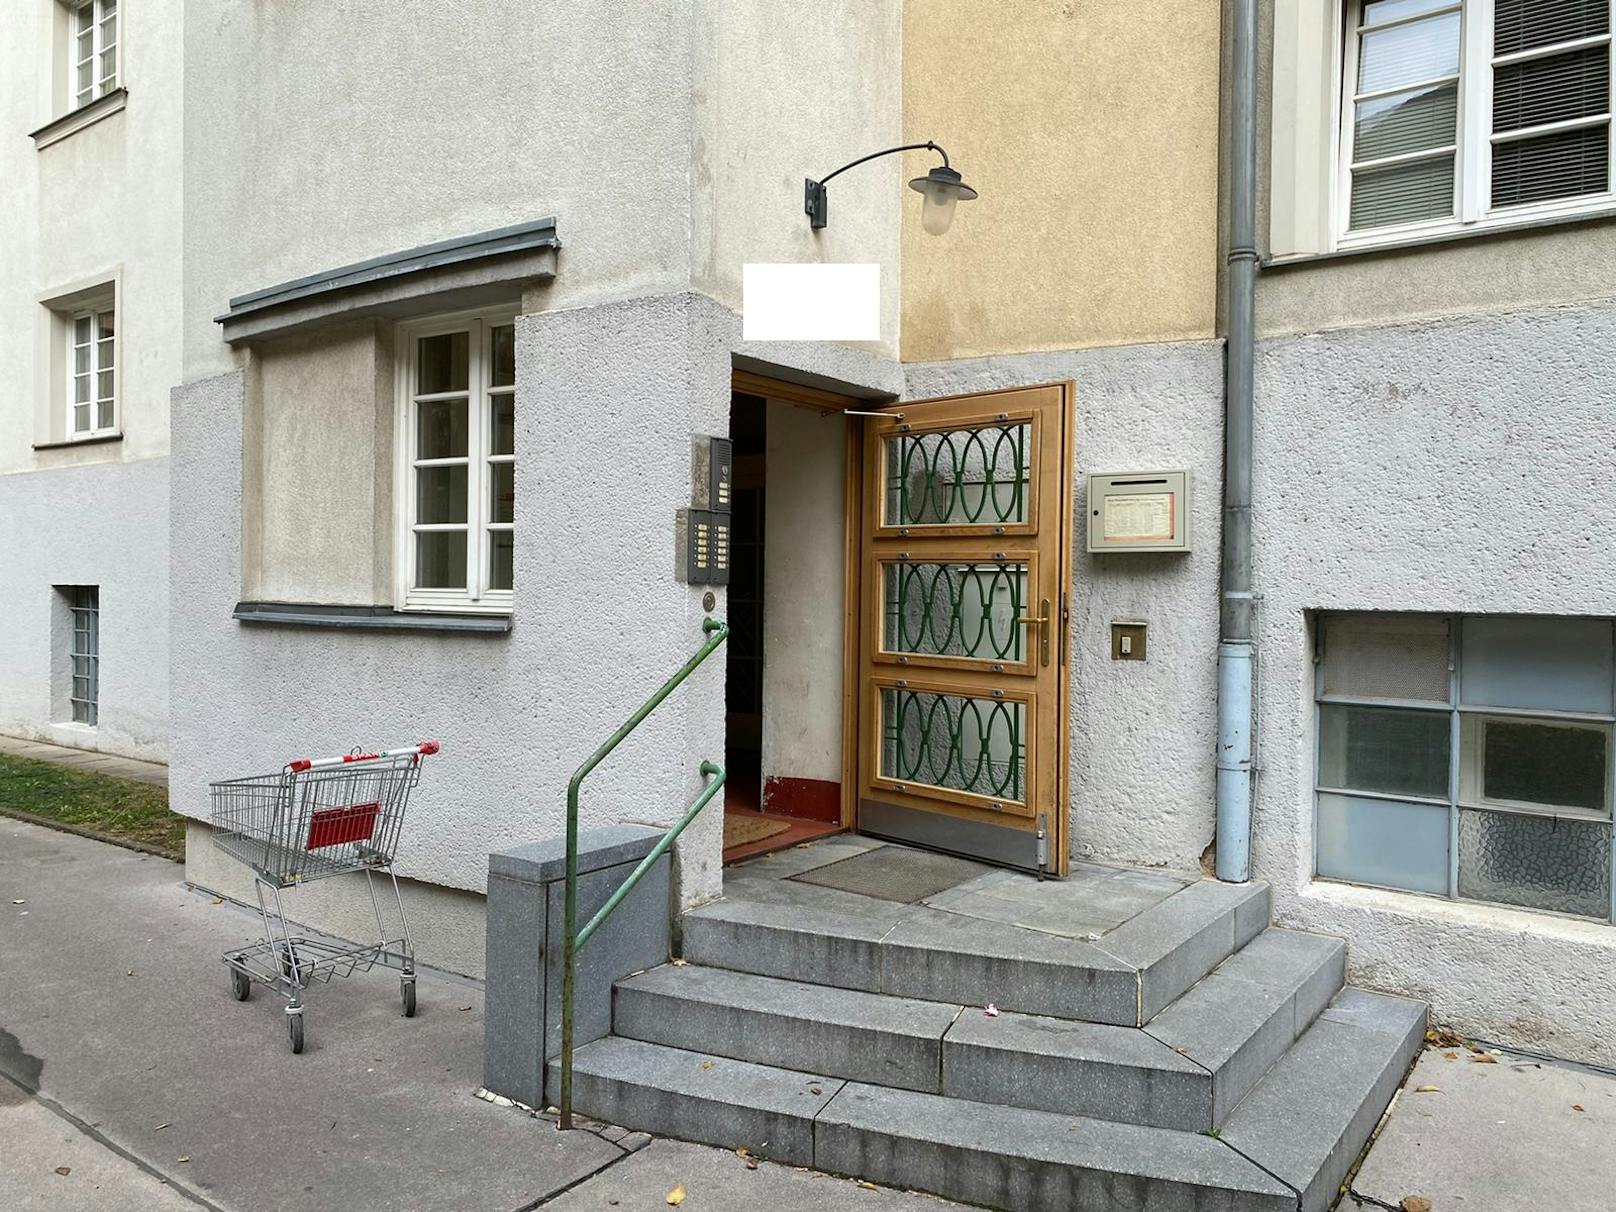 In diesem Gemeindebau in Wien-Donaustadt wohnte der Terrorist.